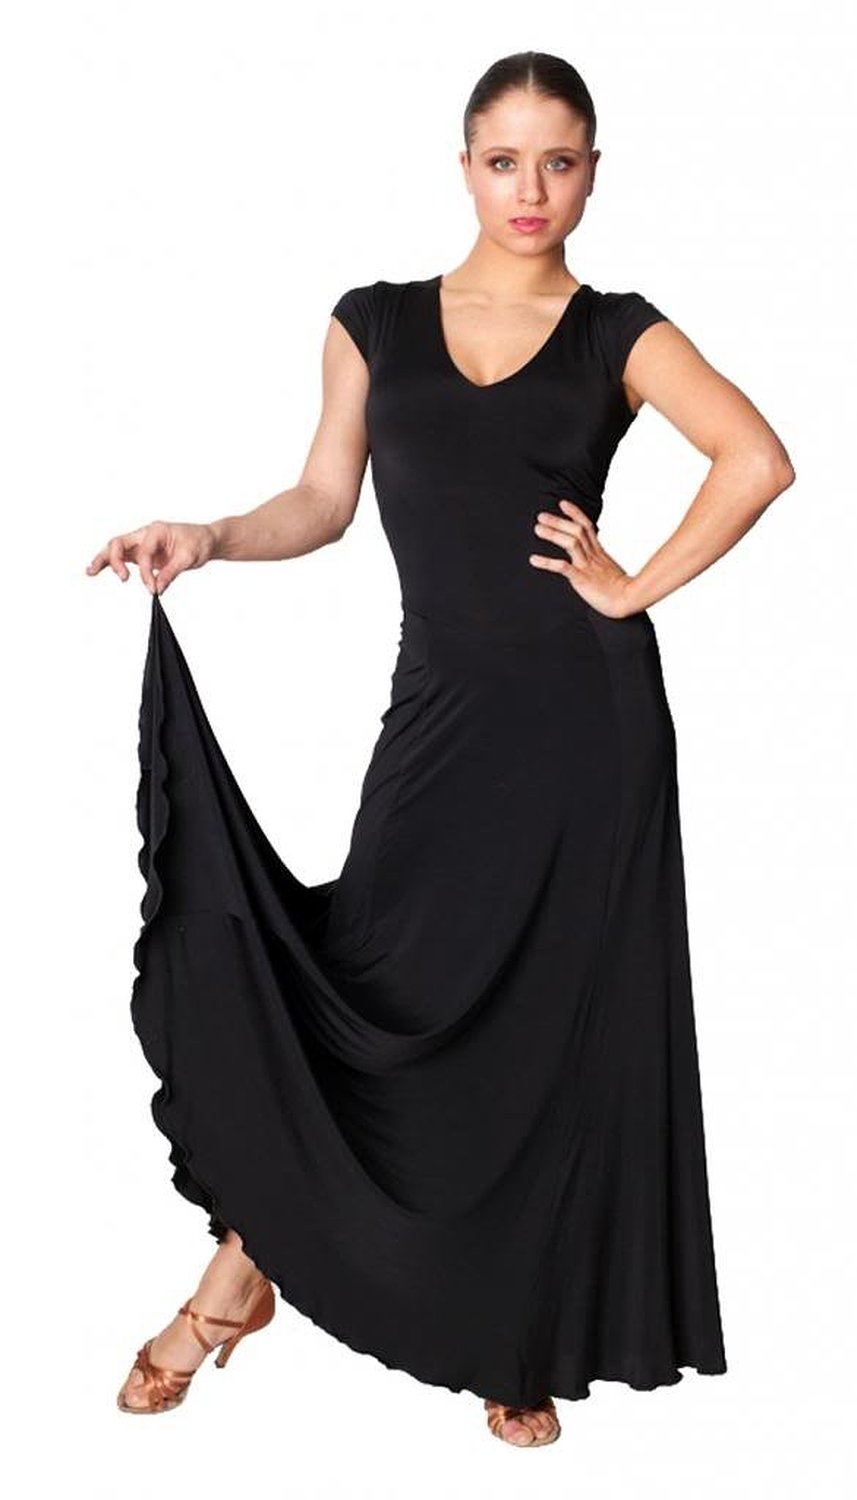 Exposed Zipper Standard/Smooth Dance Gown - Waltz, Tango Practice Dress